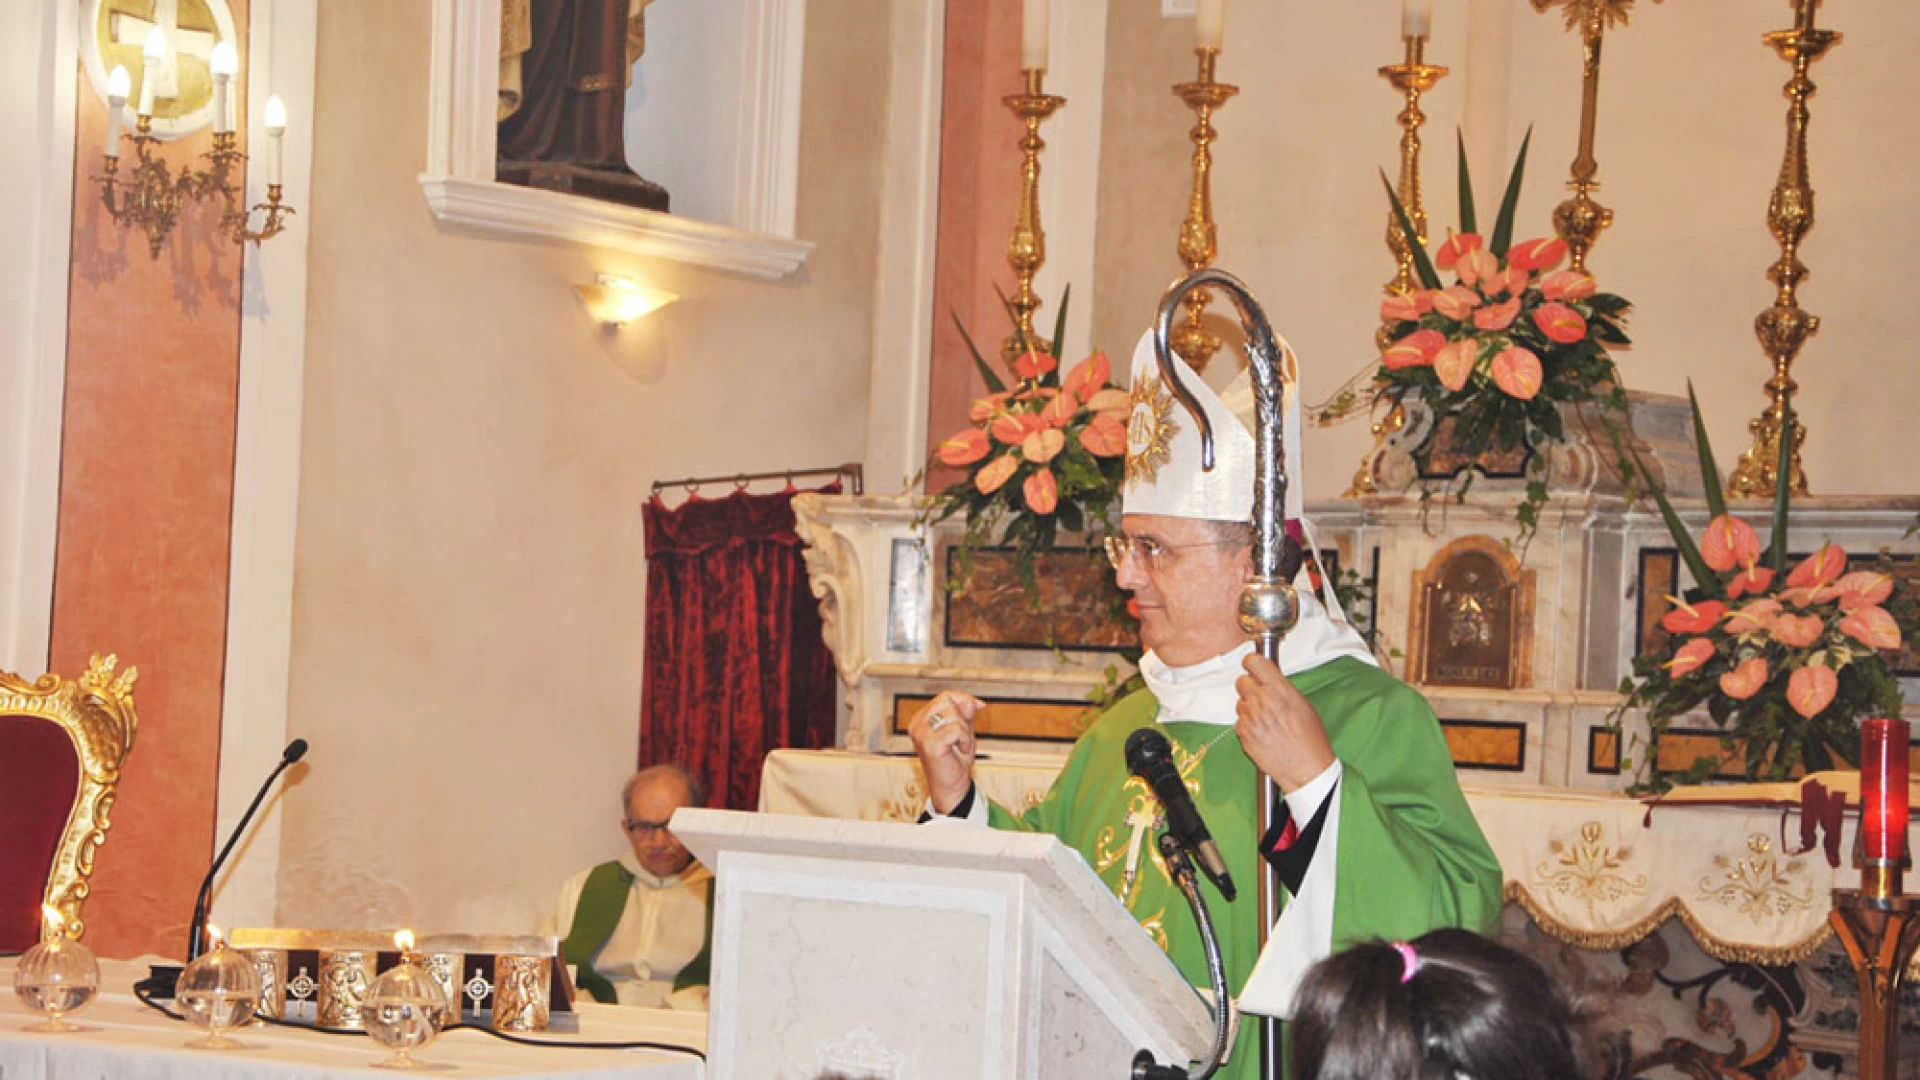 Il Vescovo di Isernia - Venafro Camillo Cibotti fa chiarezza sui casi di abusi in Diocesi. "Chiedo perdono". Intanto arriveranno provvedimenti